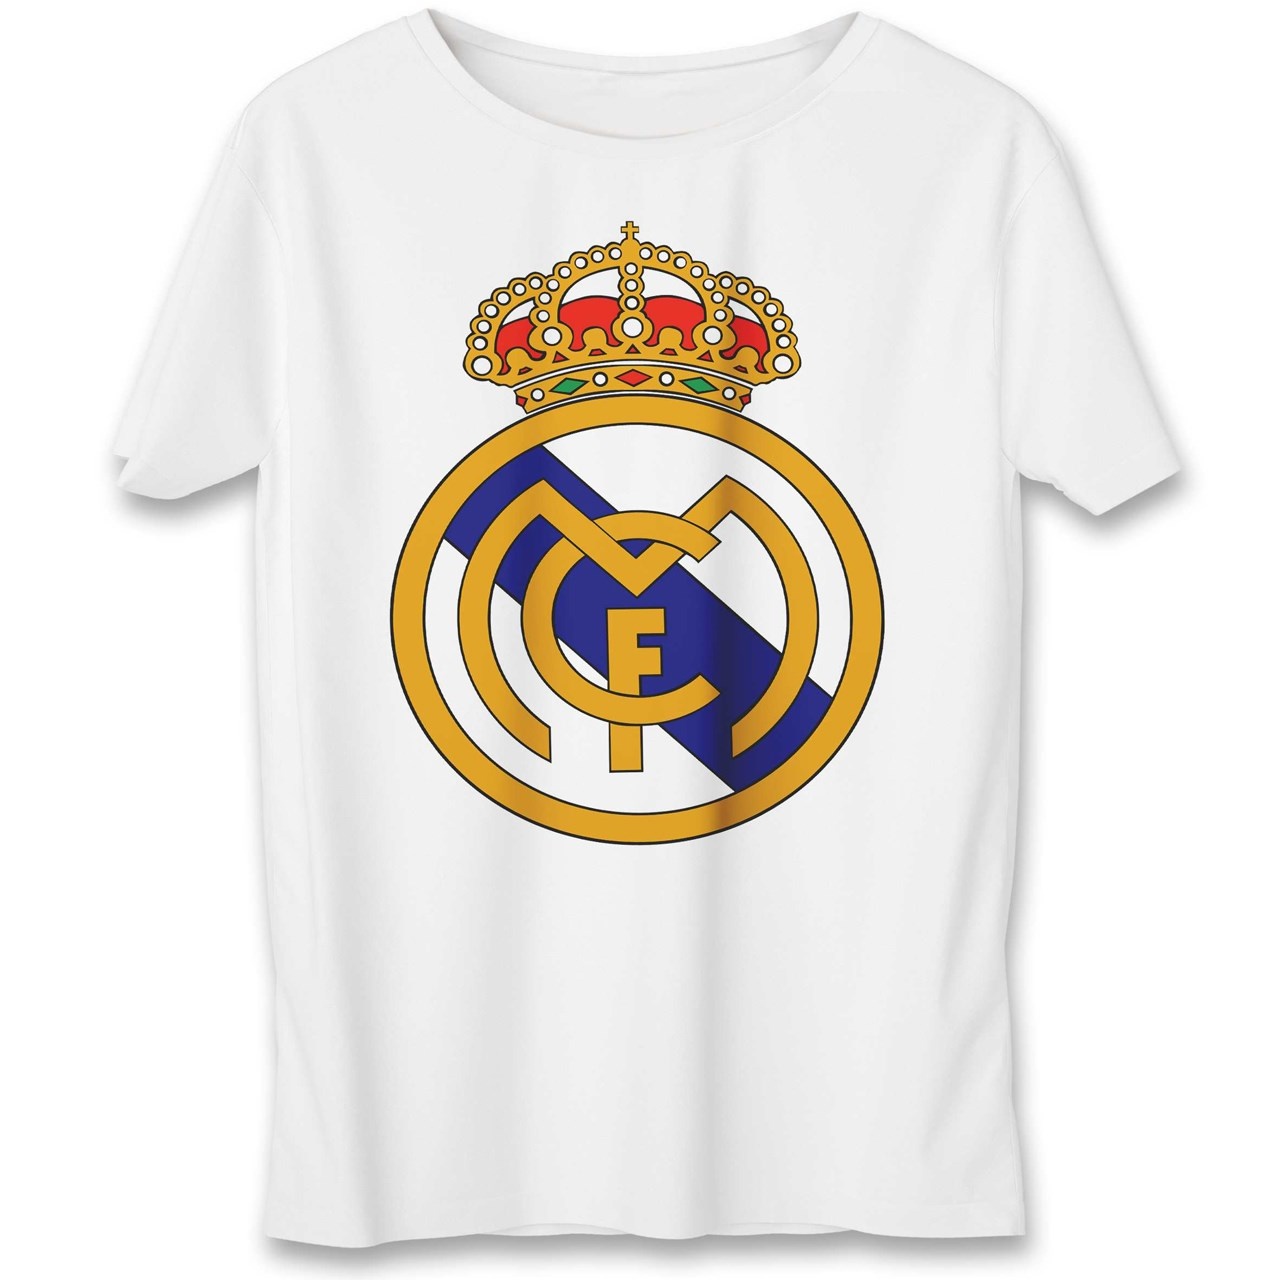 تی شرت یورپرینت به رسم طرح رئال مادرید کد 315